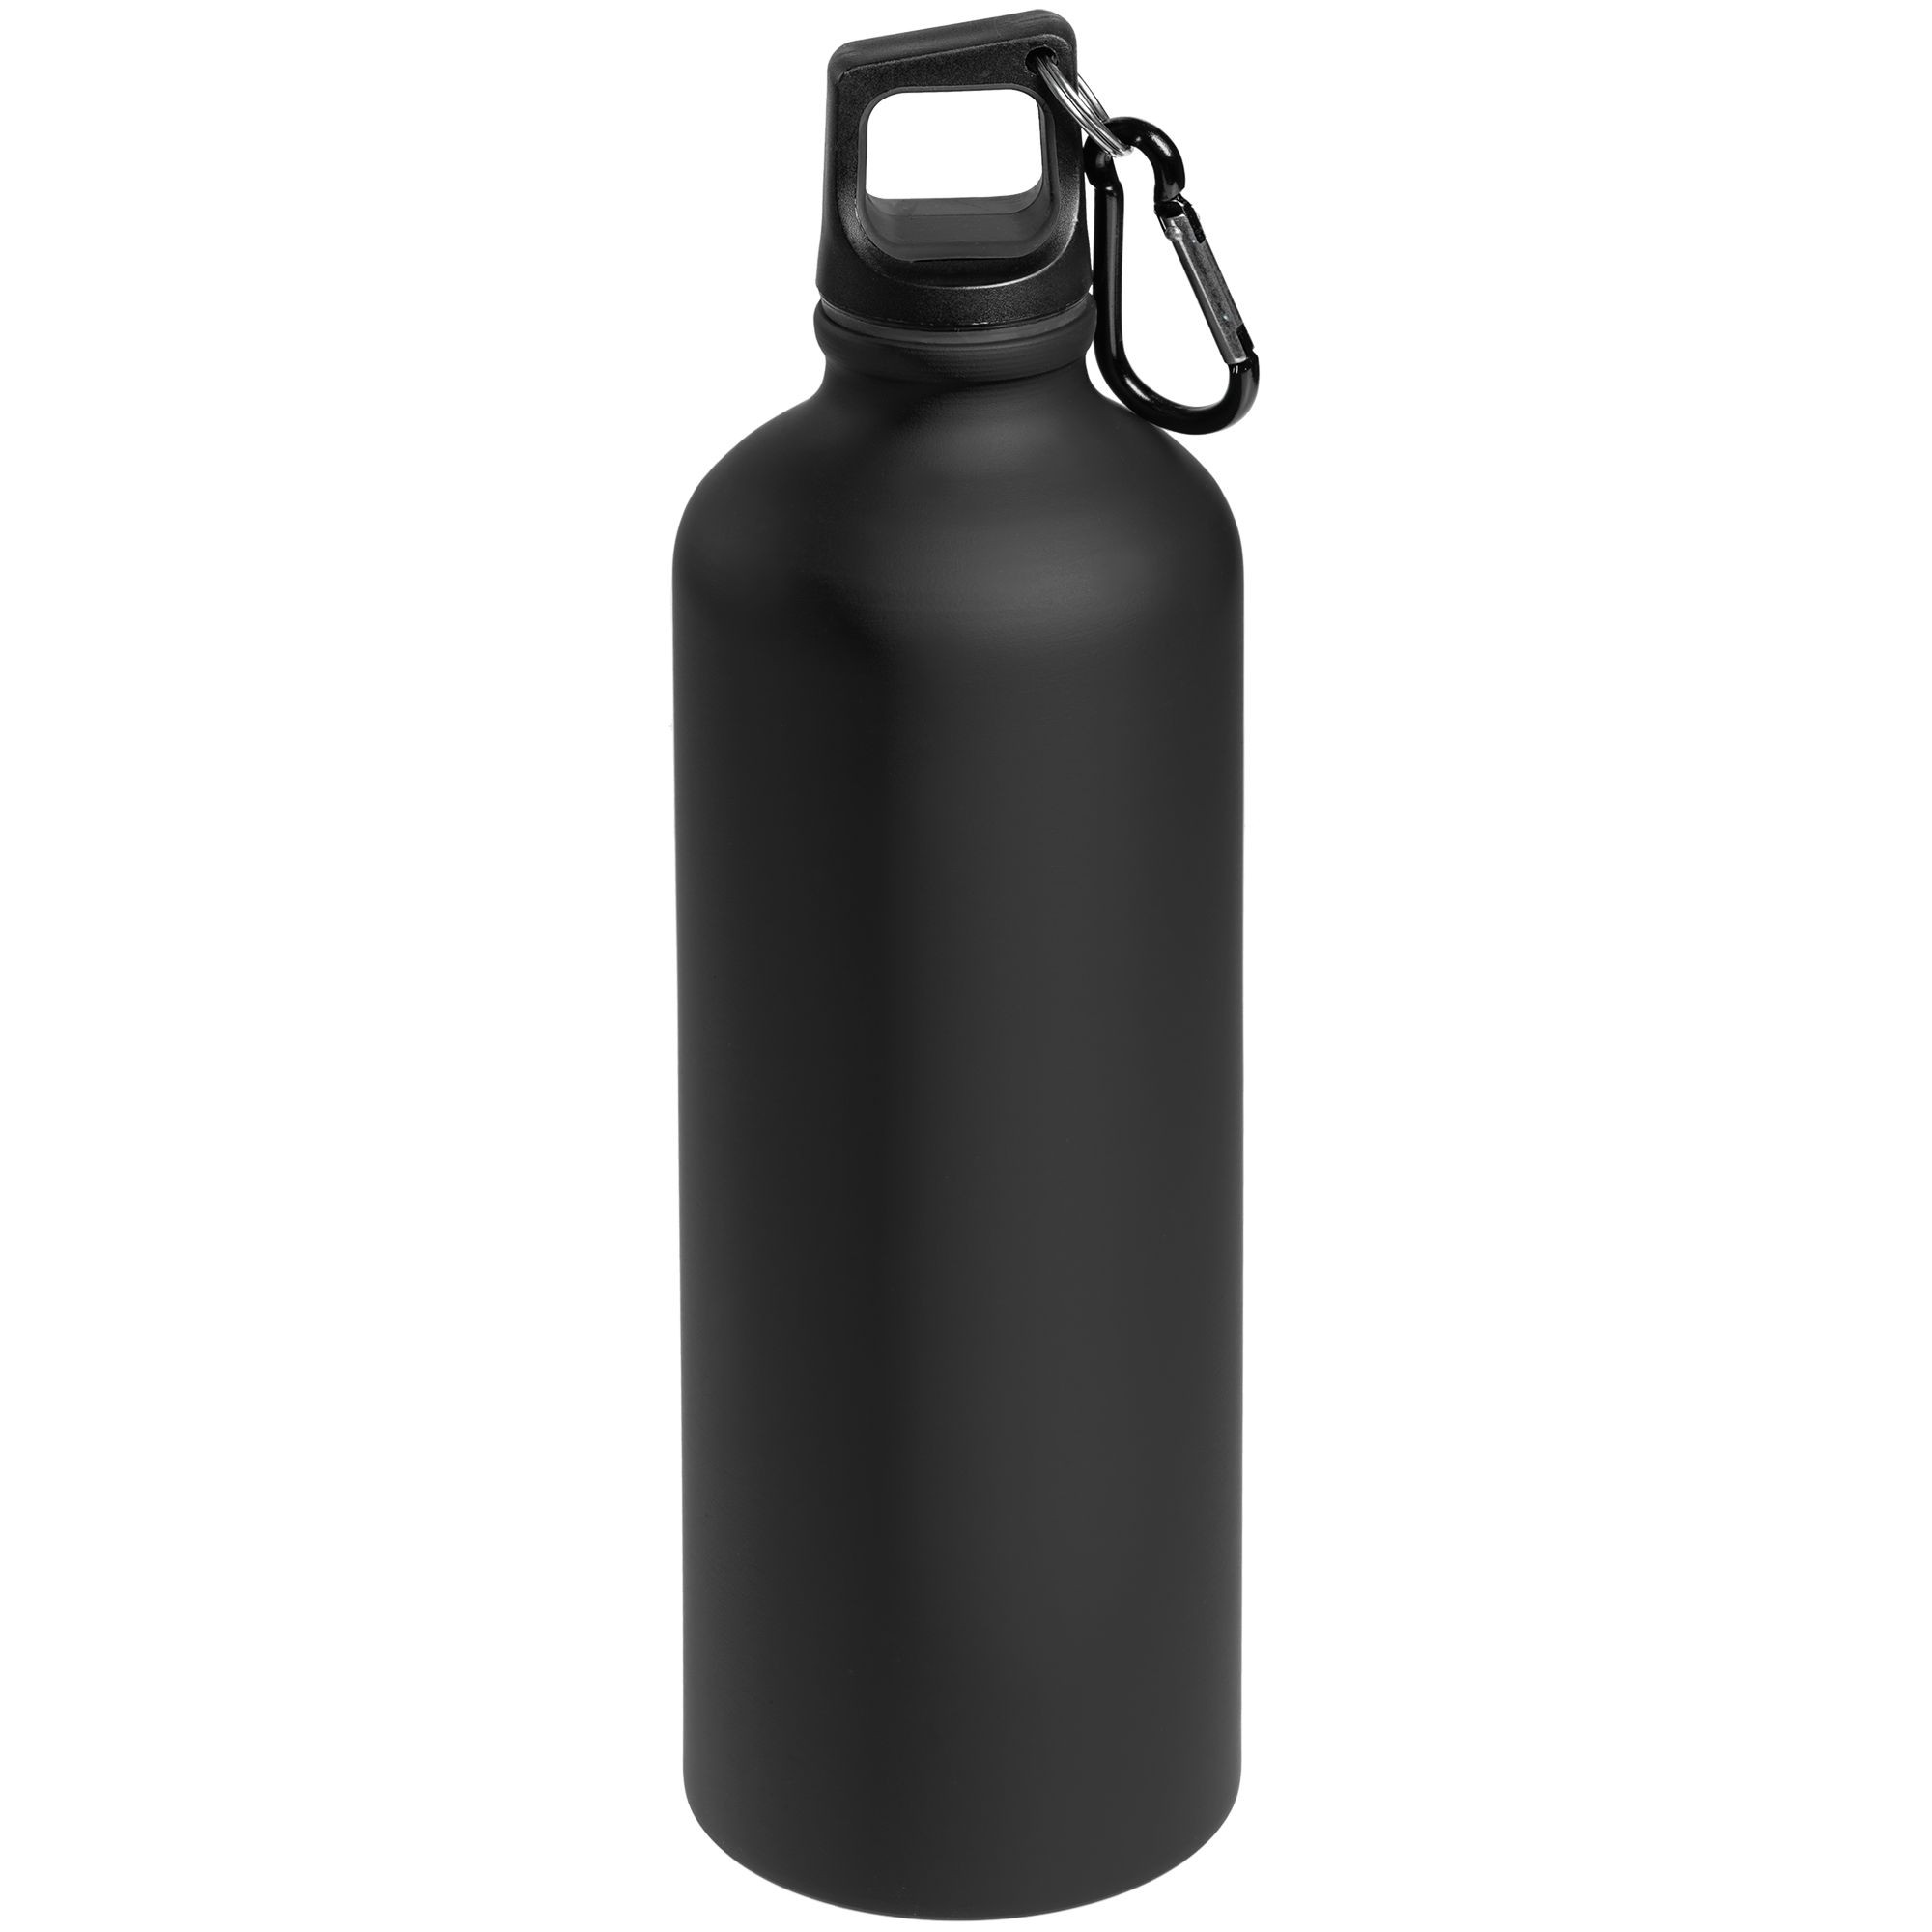 Легкая бутылка для воды. Бутылка для воды. Бутылочка для воды черная. Металлическая бутылка. Спортивная бутылка черная.